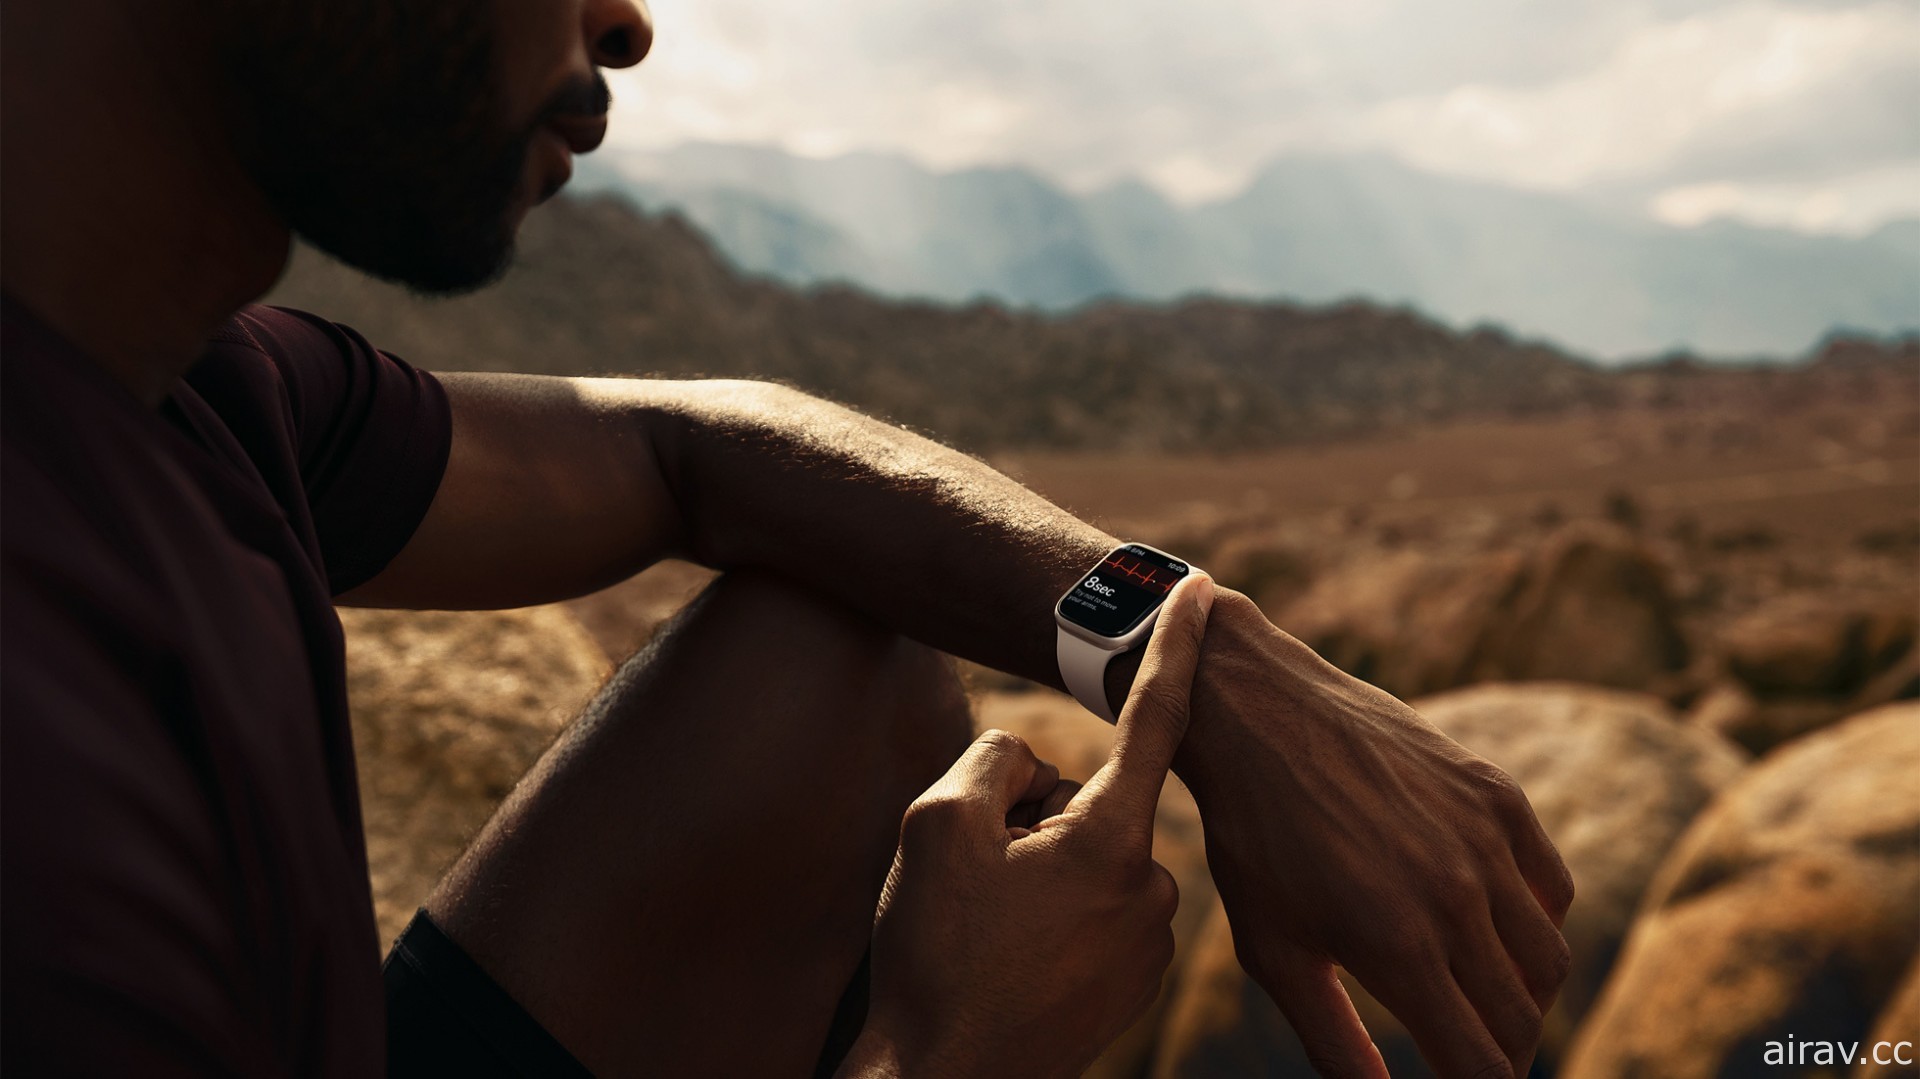 Apple 公布 Apple Watch Series 7 配备最大、最先进的显示器及 watchOS 8